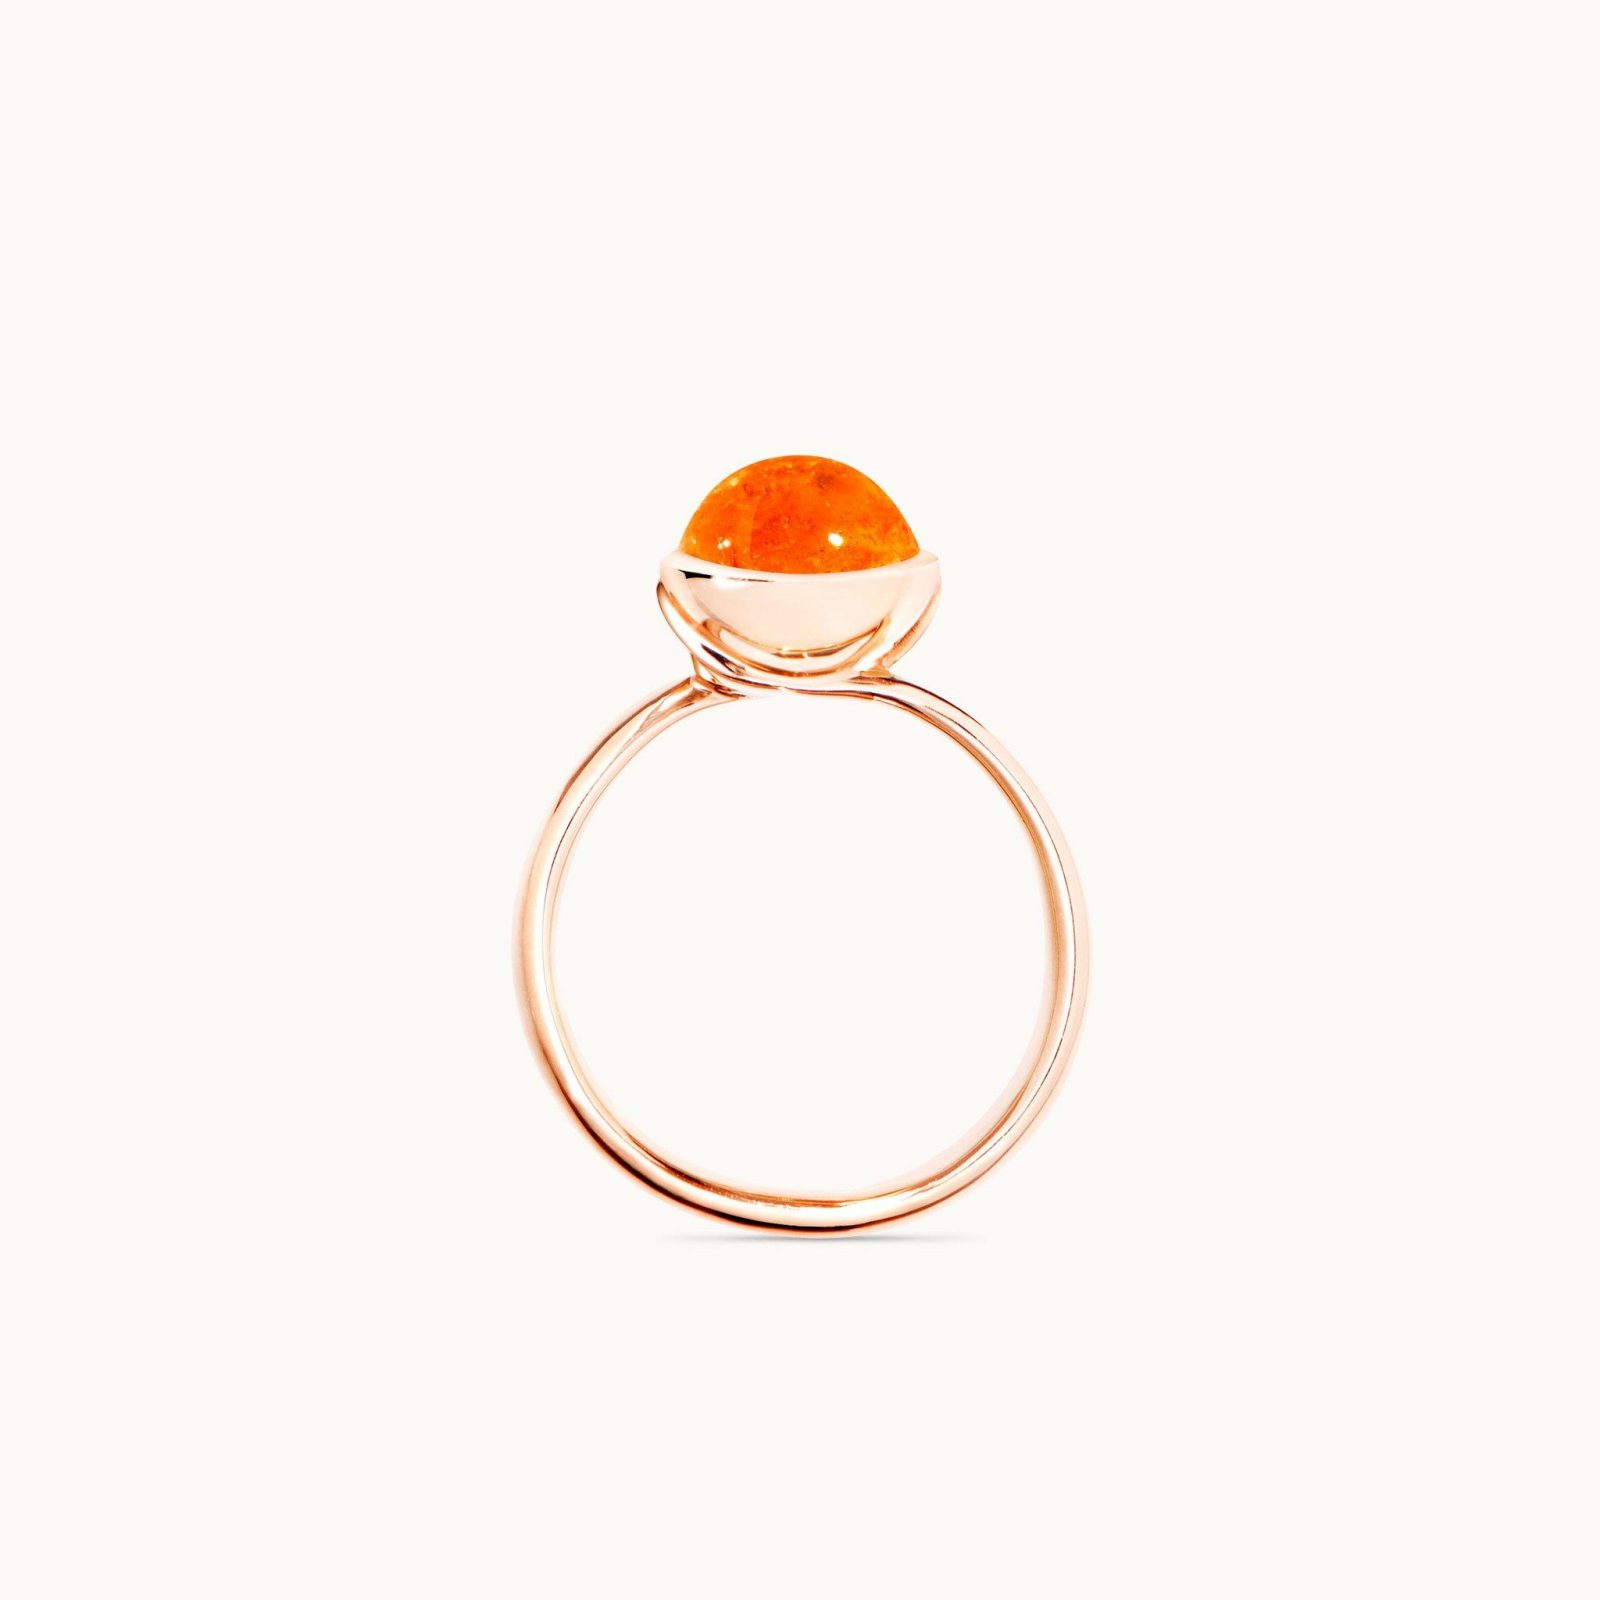 Ring Bouton klein Mandarin Granat Rosegold - Tamara Comolli - R-BOU-s-Man-rg